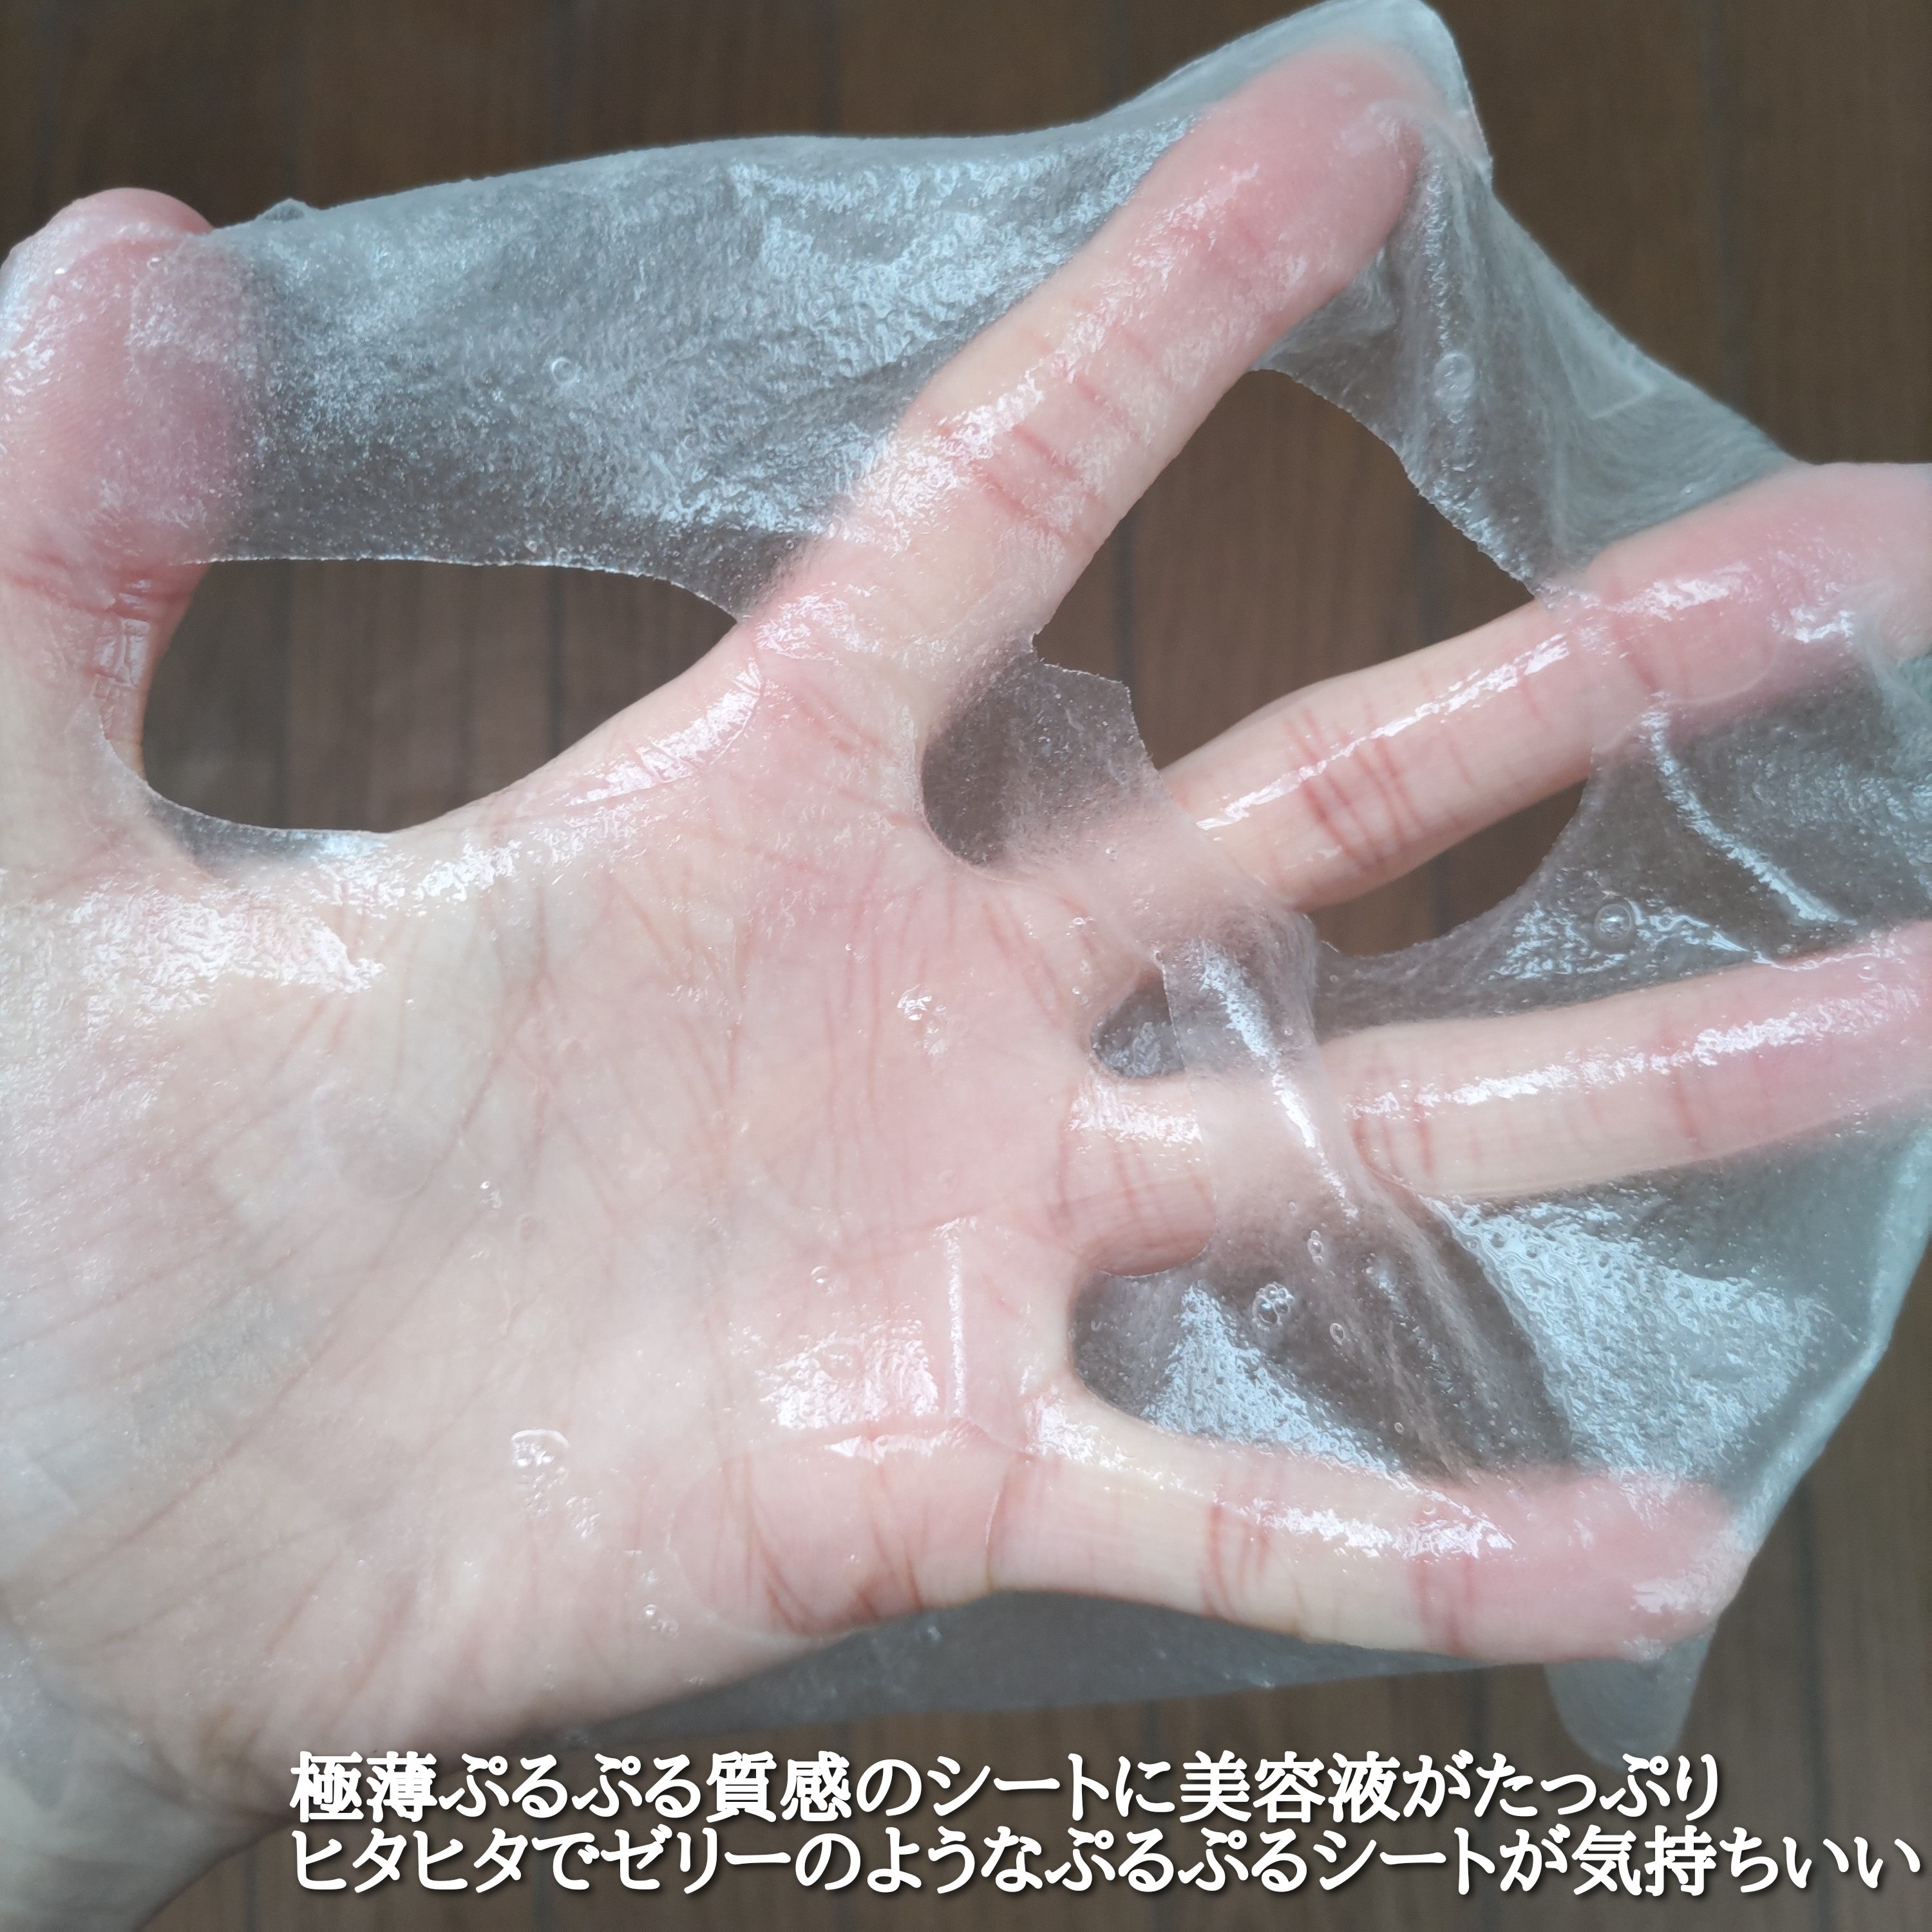 ネイチャーリパブリック パーフェクトバランシング モイストゼリーマスクを使ったYuKaRi♡さんのクチコミ画像4